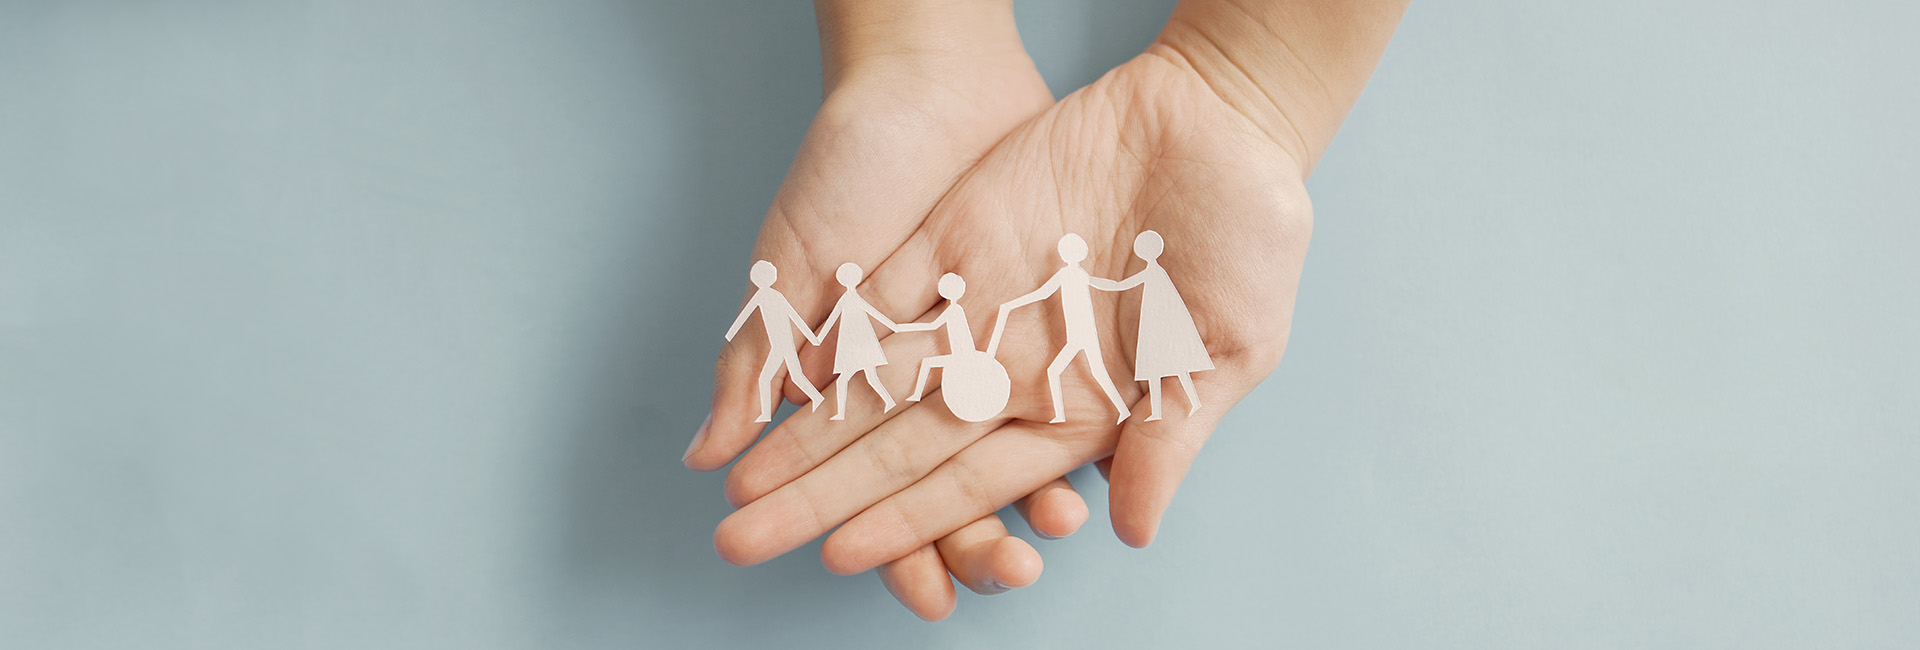 Arten der Pension: Hände halten Papierschnittfiguren die eine inklusive Gemeinschaft darstellen